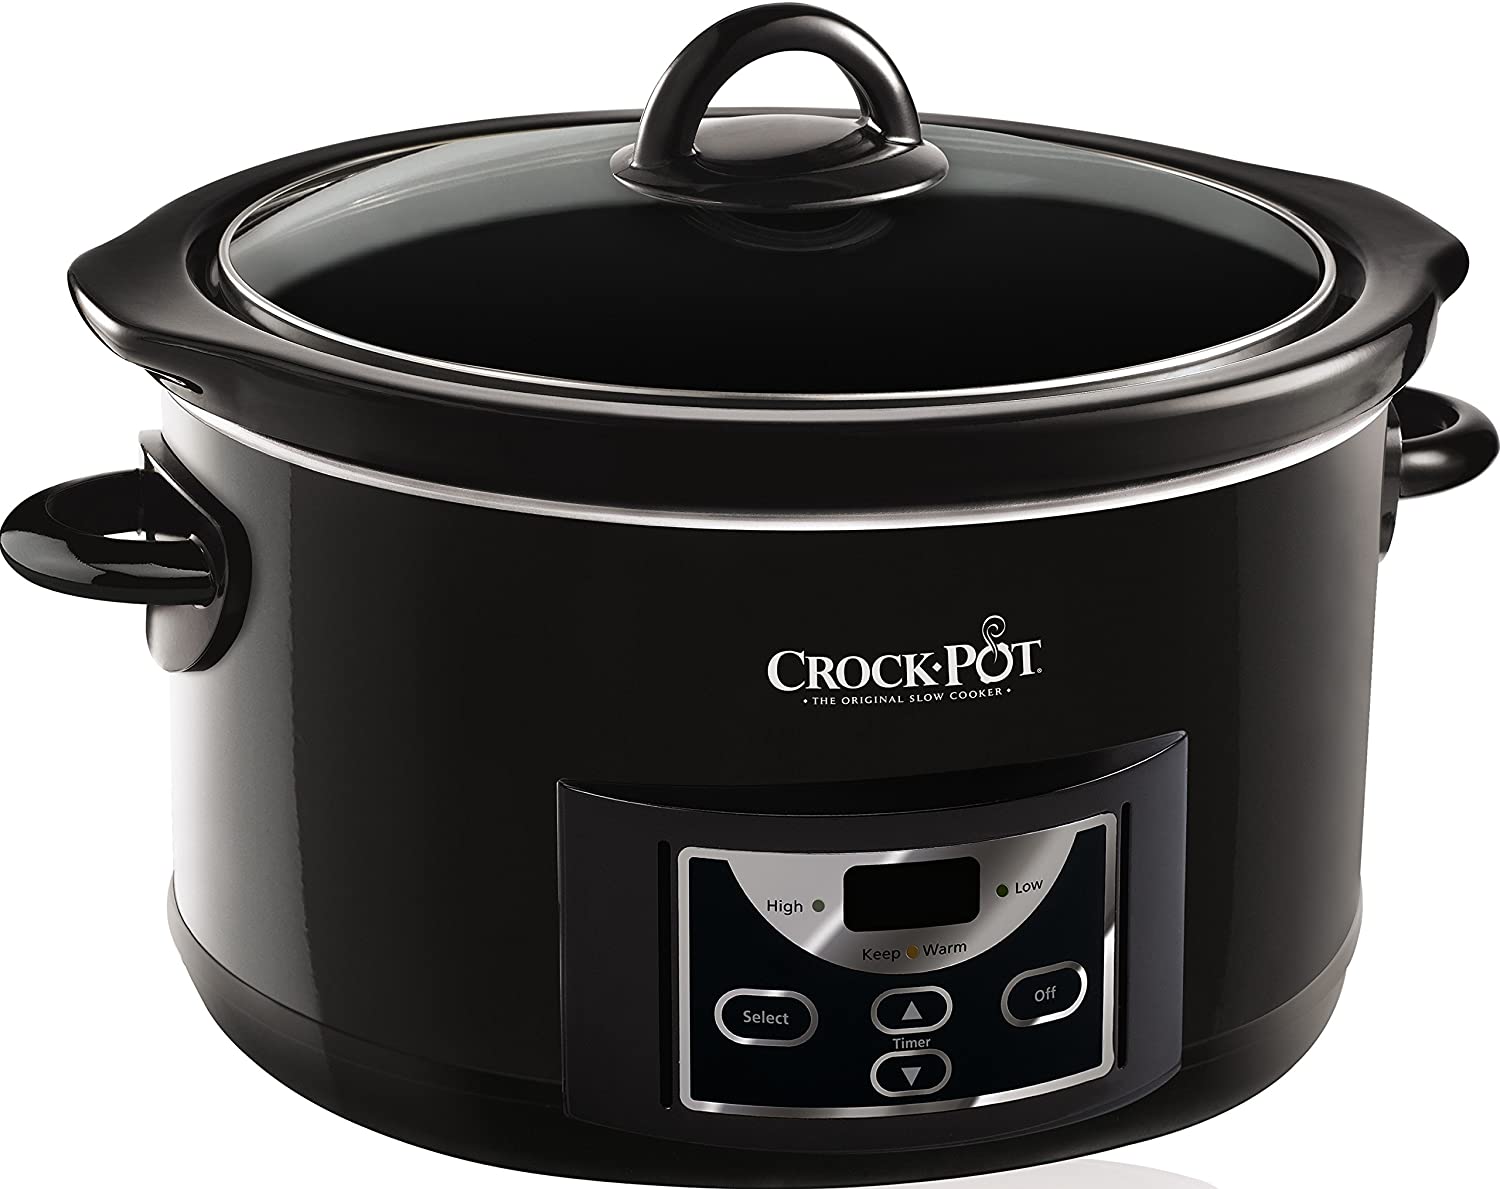 Voorzieningen kapok Benodigdheden Crockpot Slowcooker CR507 4.7 Liter kopen? | Cookinglife